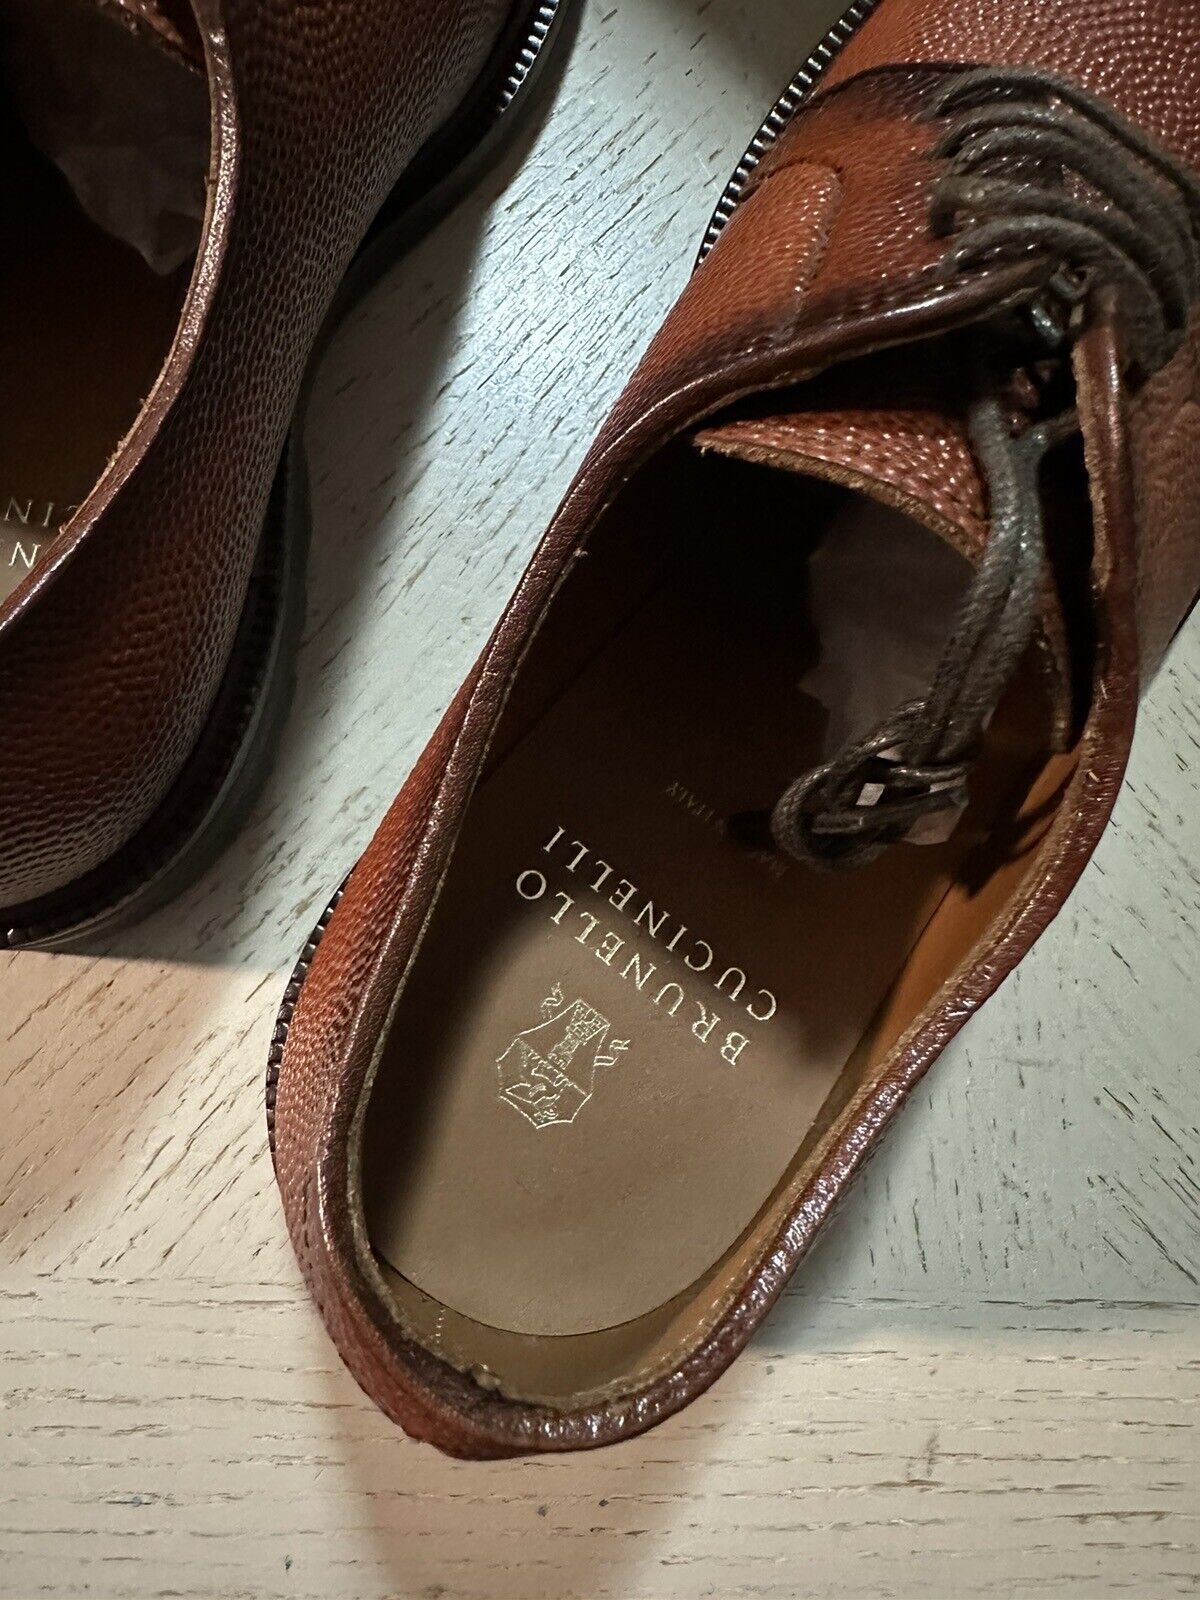 NIB $1250 Brunello Cucinelli Men Grained Leather Shoes LT Burgundy 9 US/42 Eu